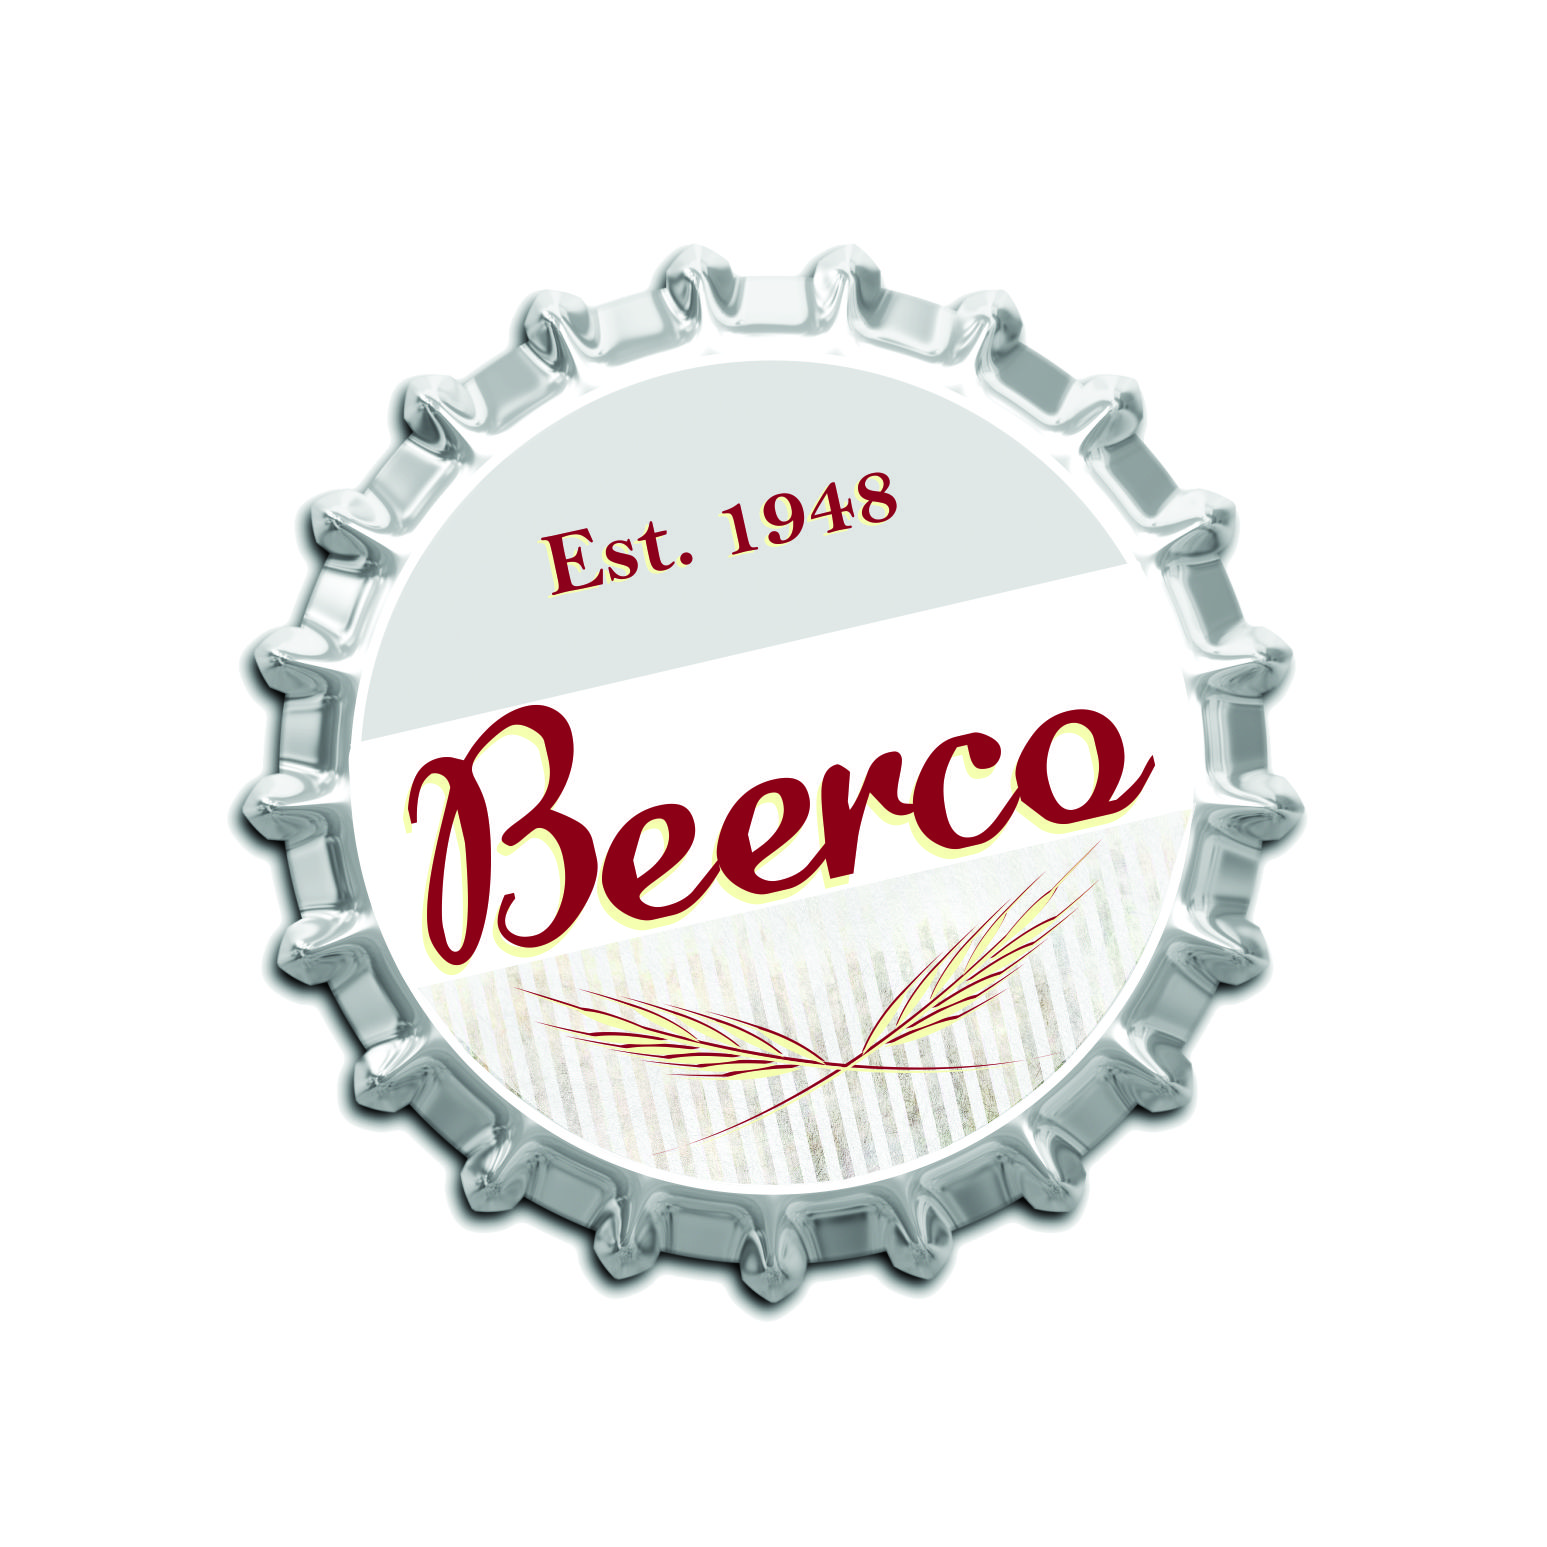 Beerco (Tier 2)